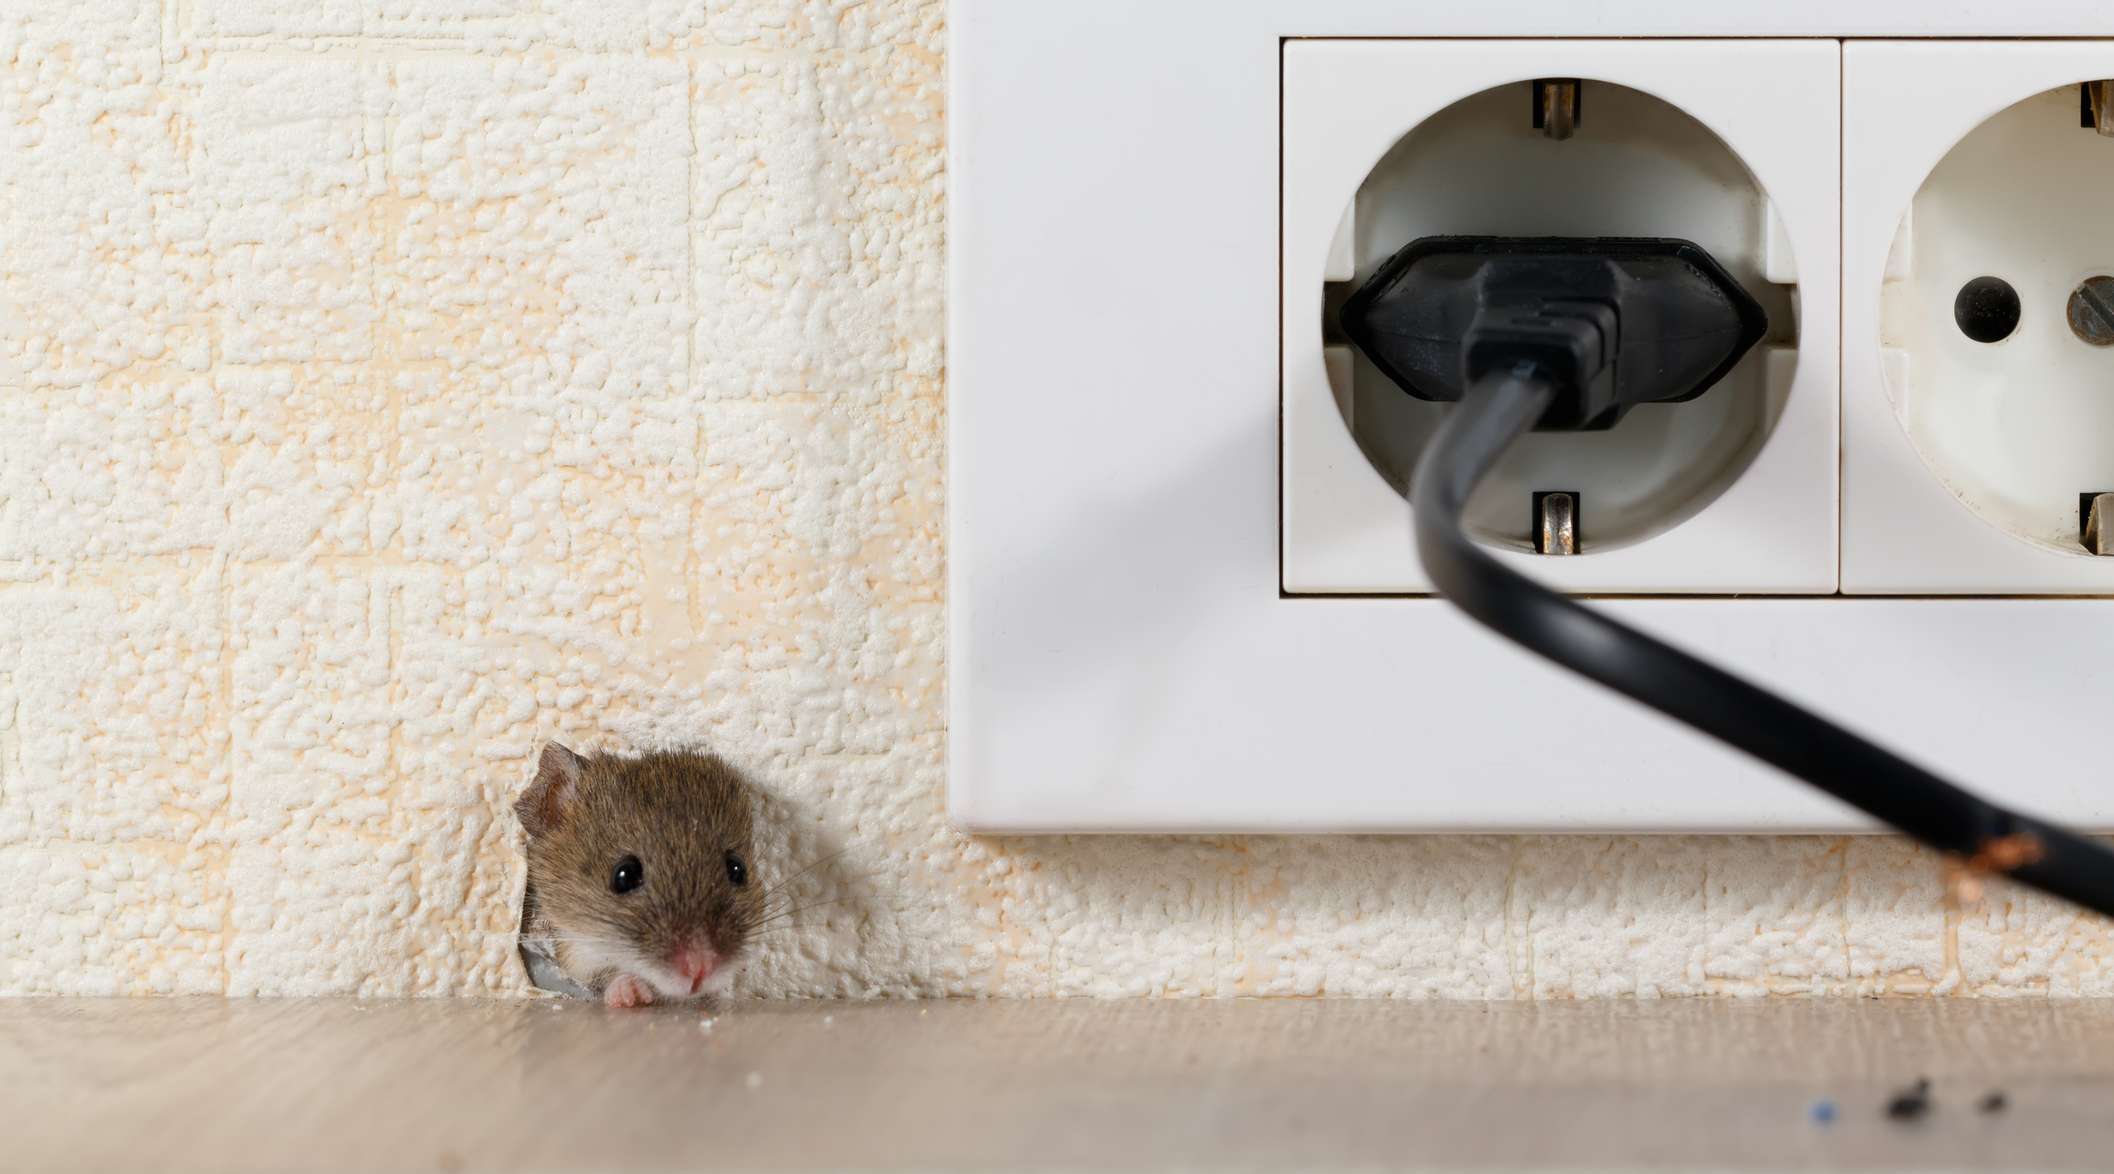 Allianz - Elektronikversicherung: Ein angeknabbertes Kabel, daneben schaut eine Maus aus dem Mauseloch